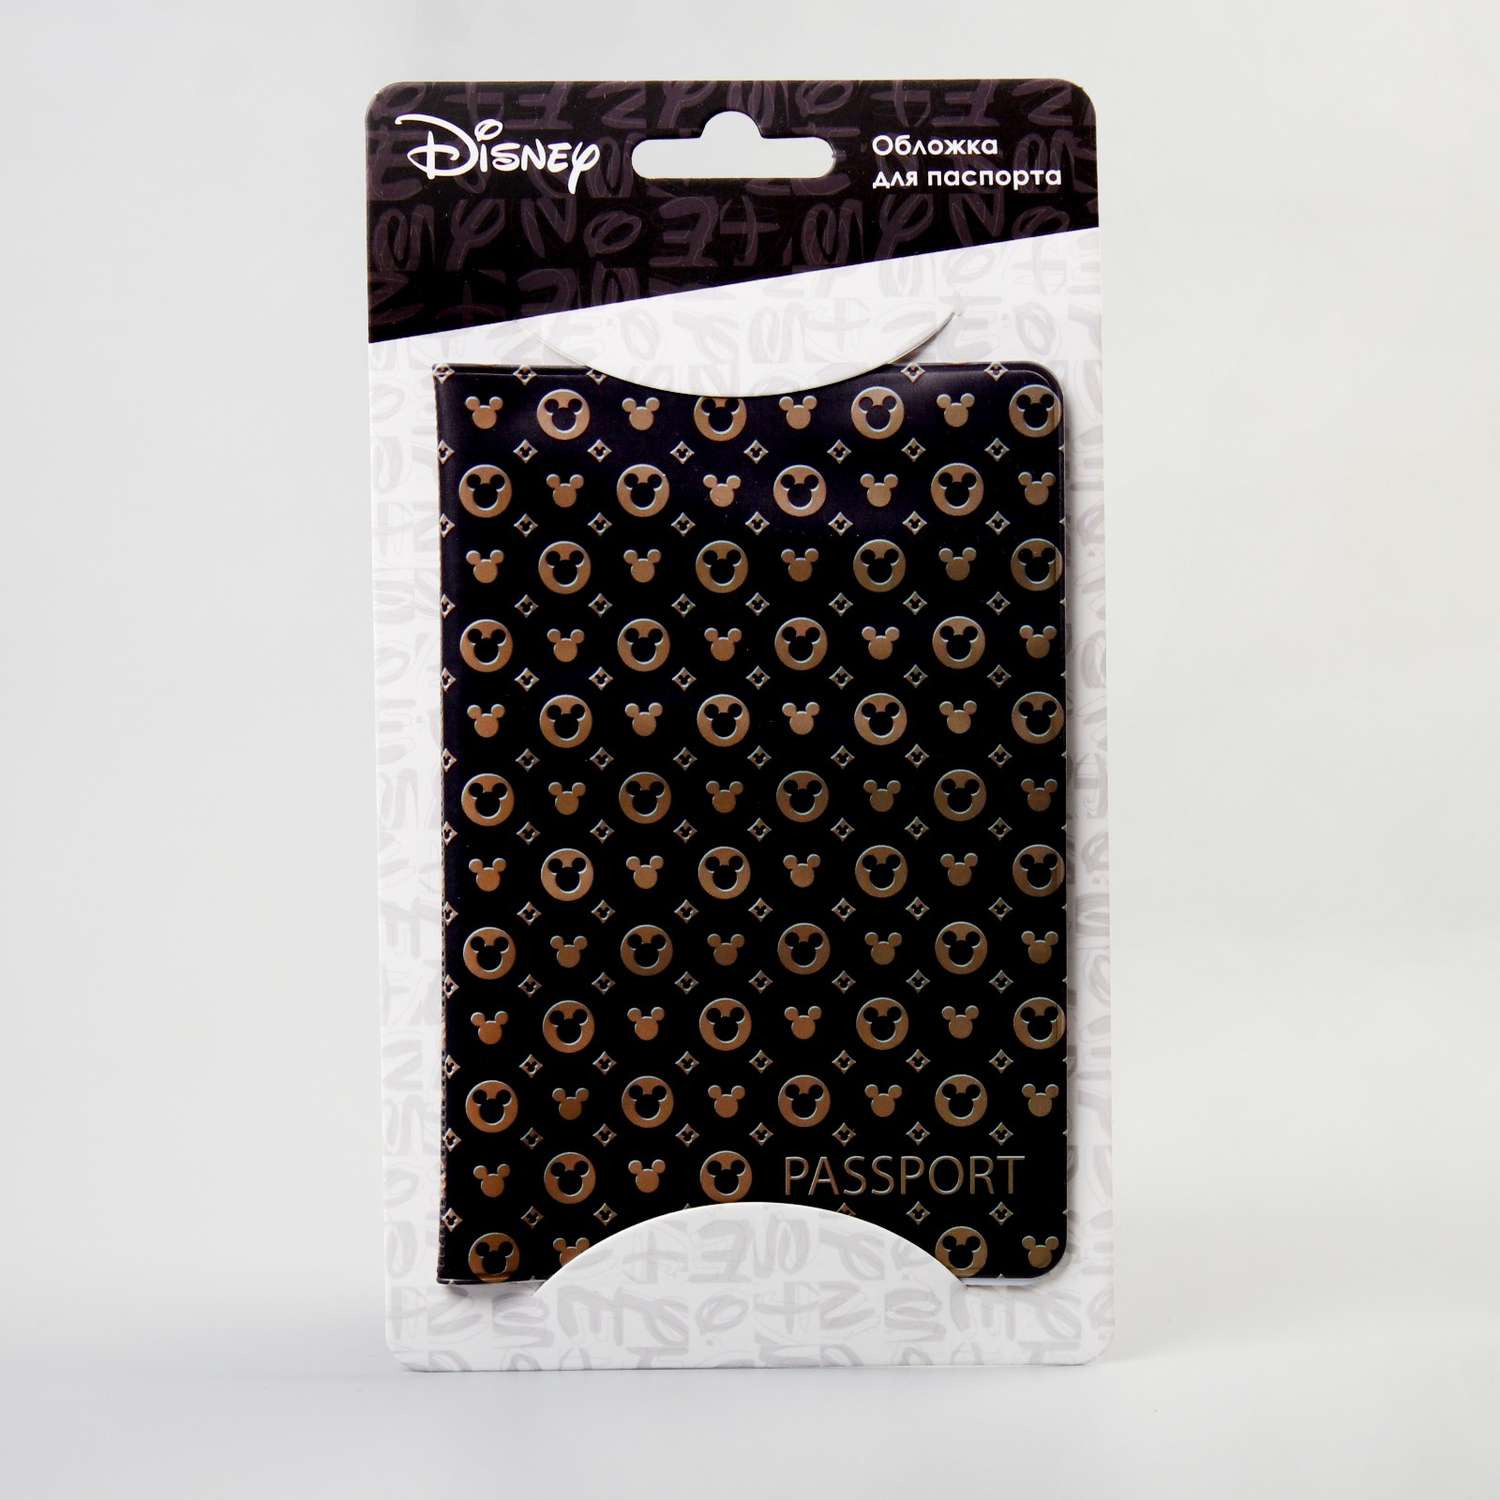 Обложка Disney для паспорта Микки Маус Disney - фото 2